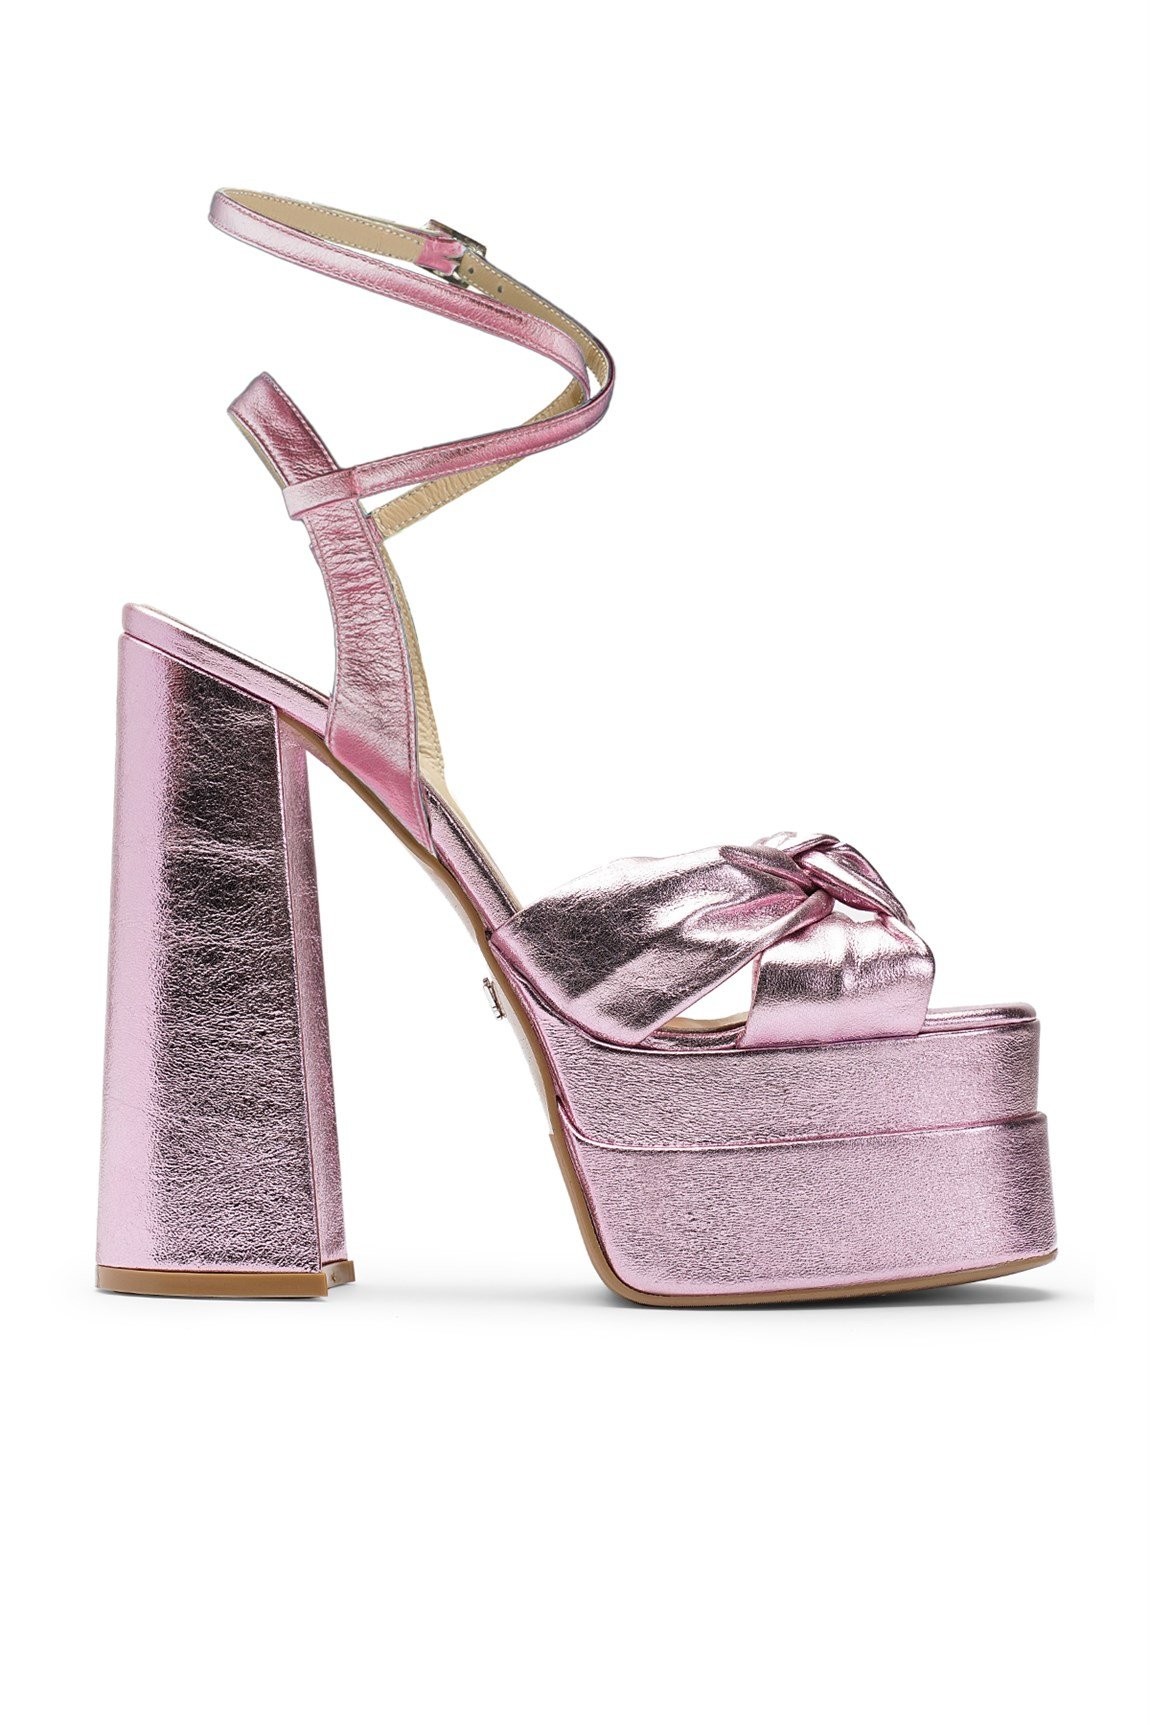 Jabotter Lorena Pink Hologram Leather Platform Heeled Shoes